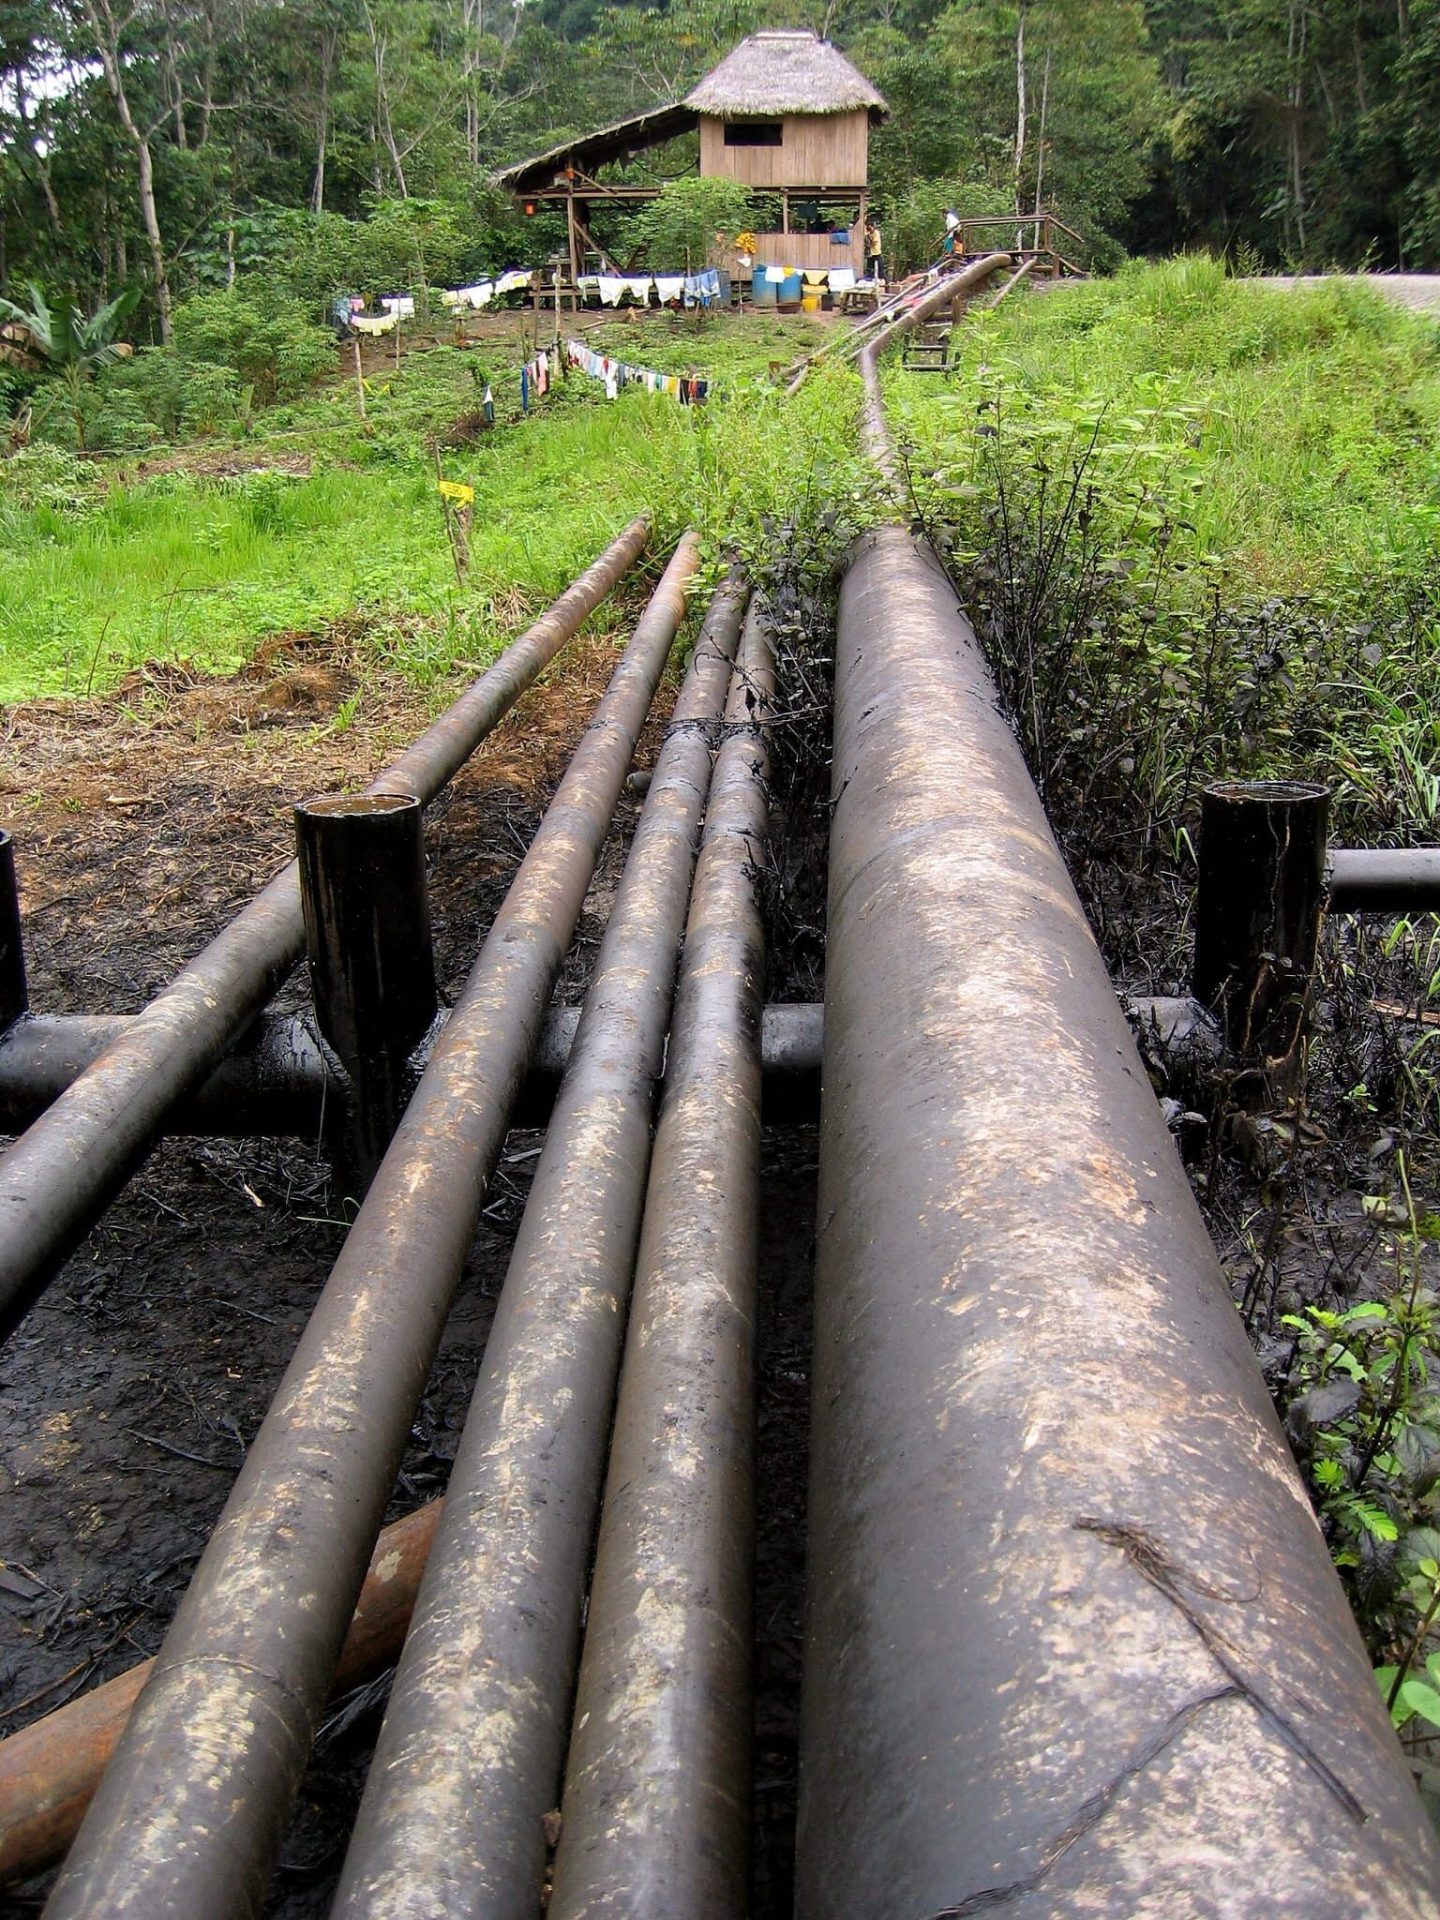 Oleoductos pasan junto a una vivienda en la región amazónica del Parque Nacional Yasuní, Ecuador.